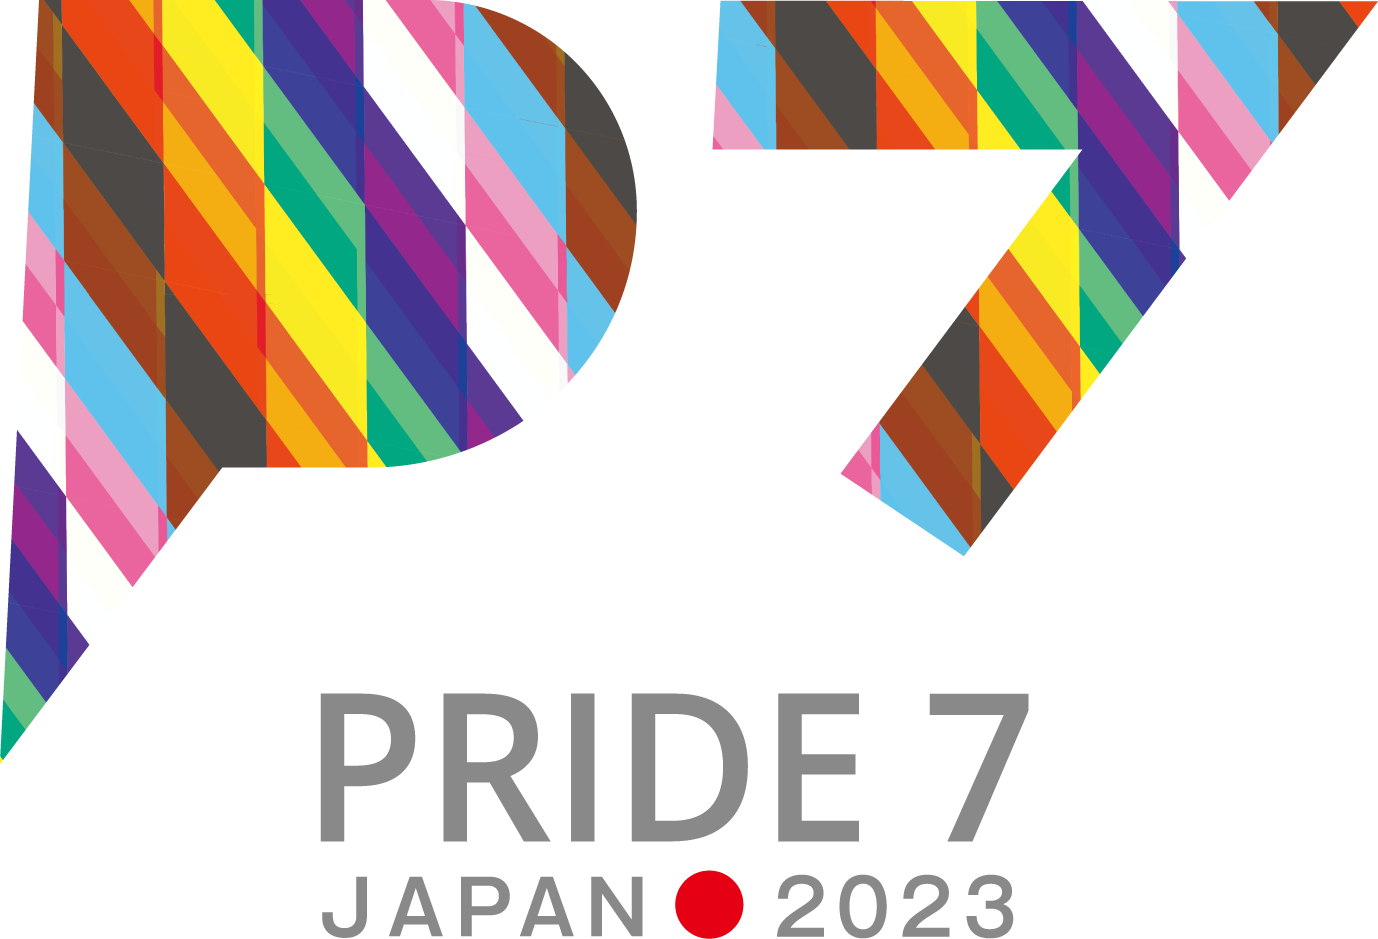 Pride7 Summit 2023